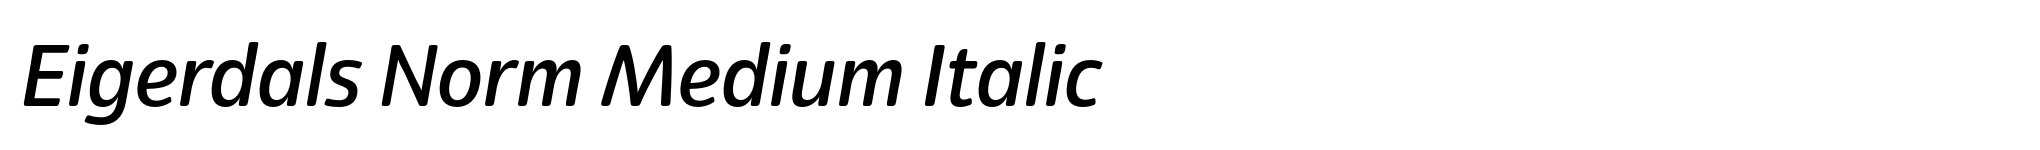 Eigerdals Norm Medium Italic image